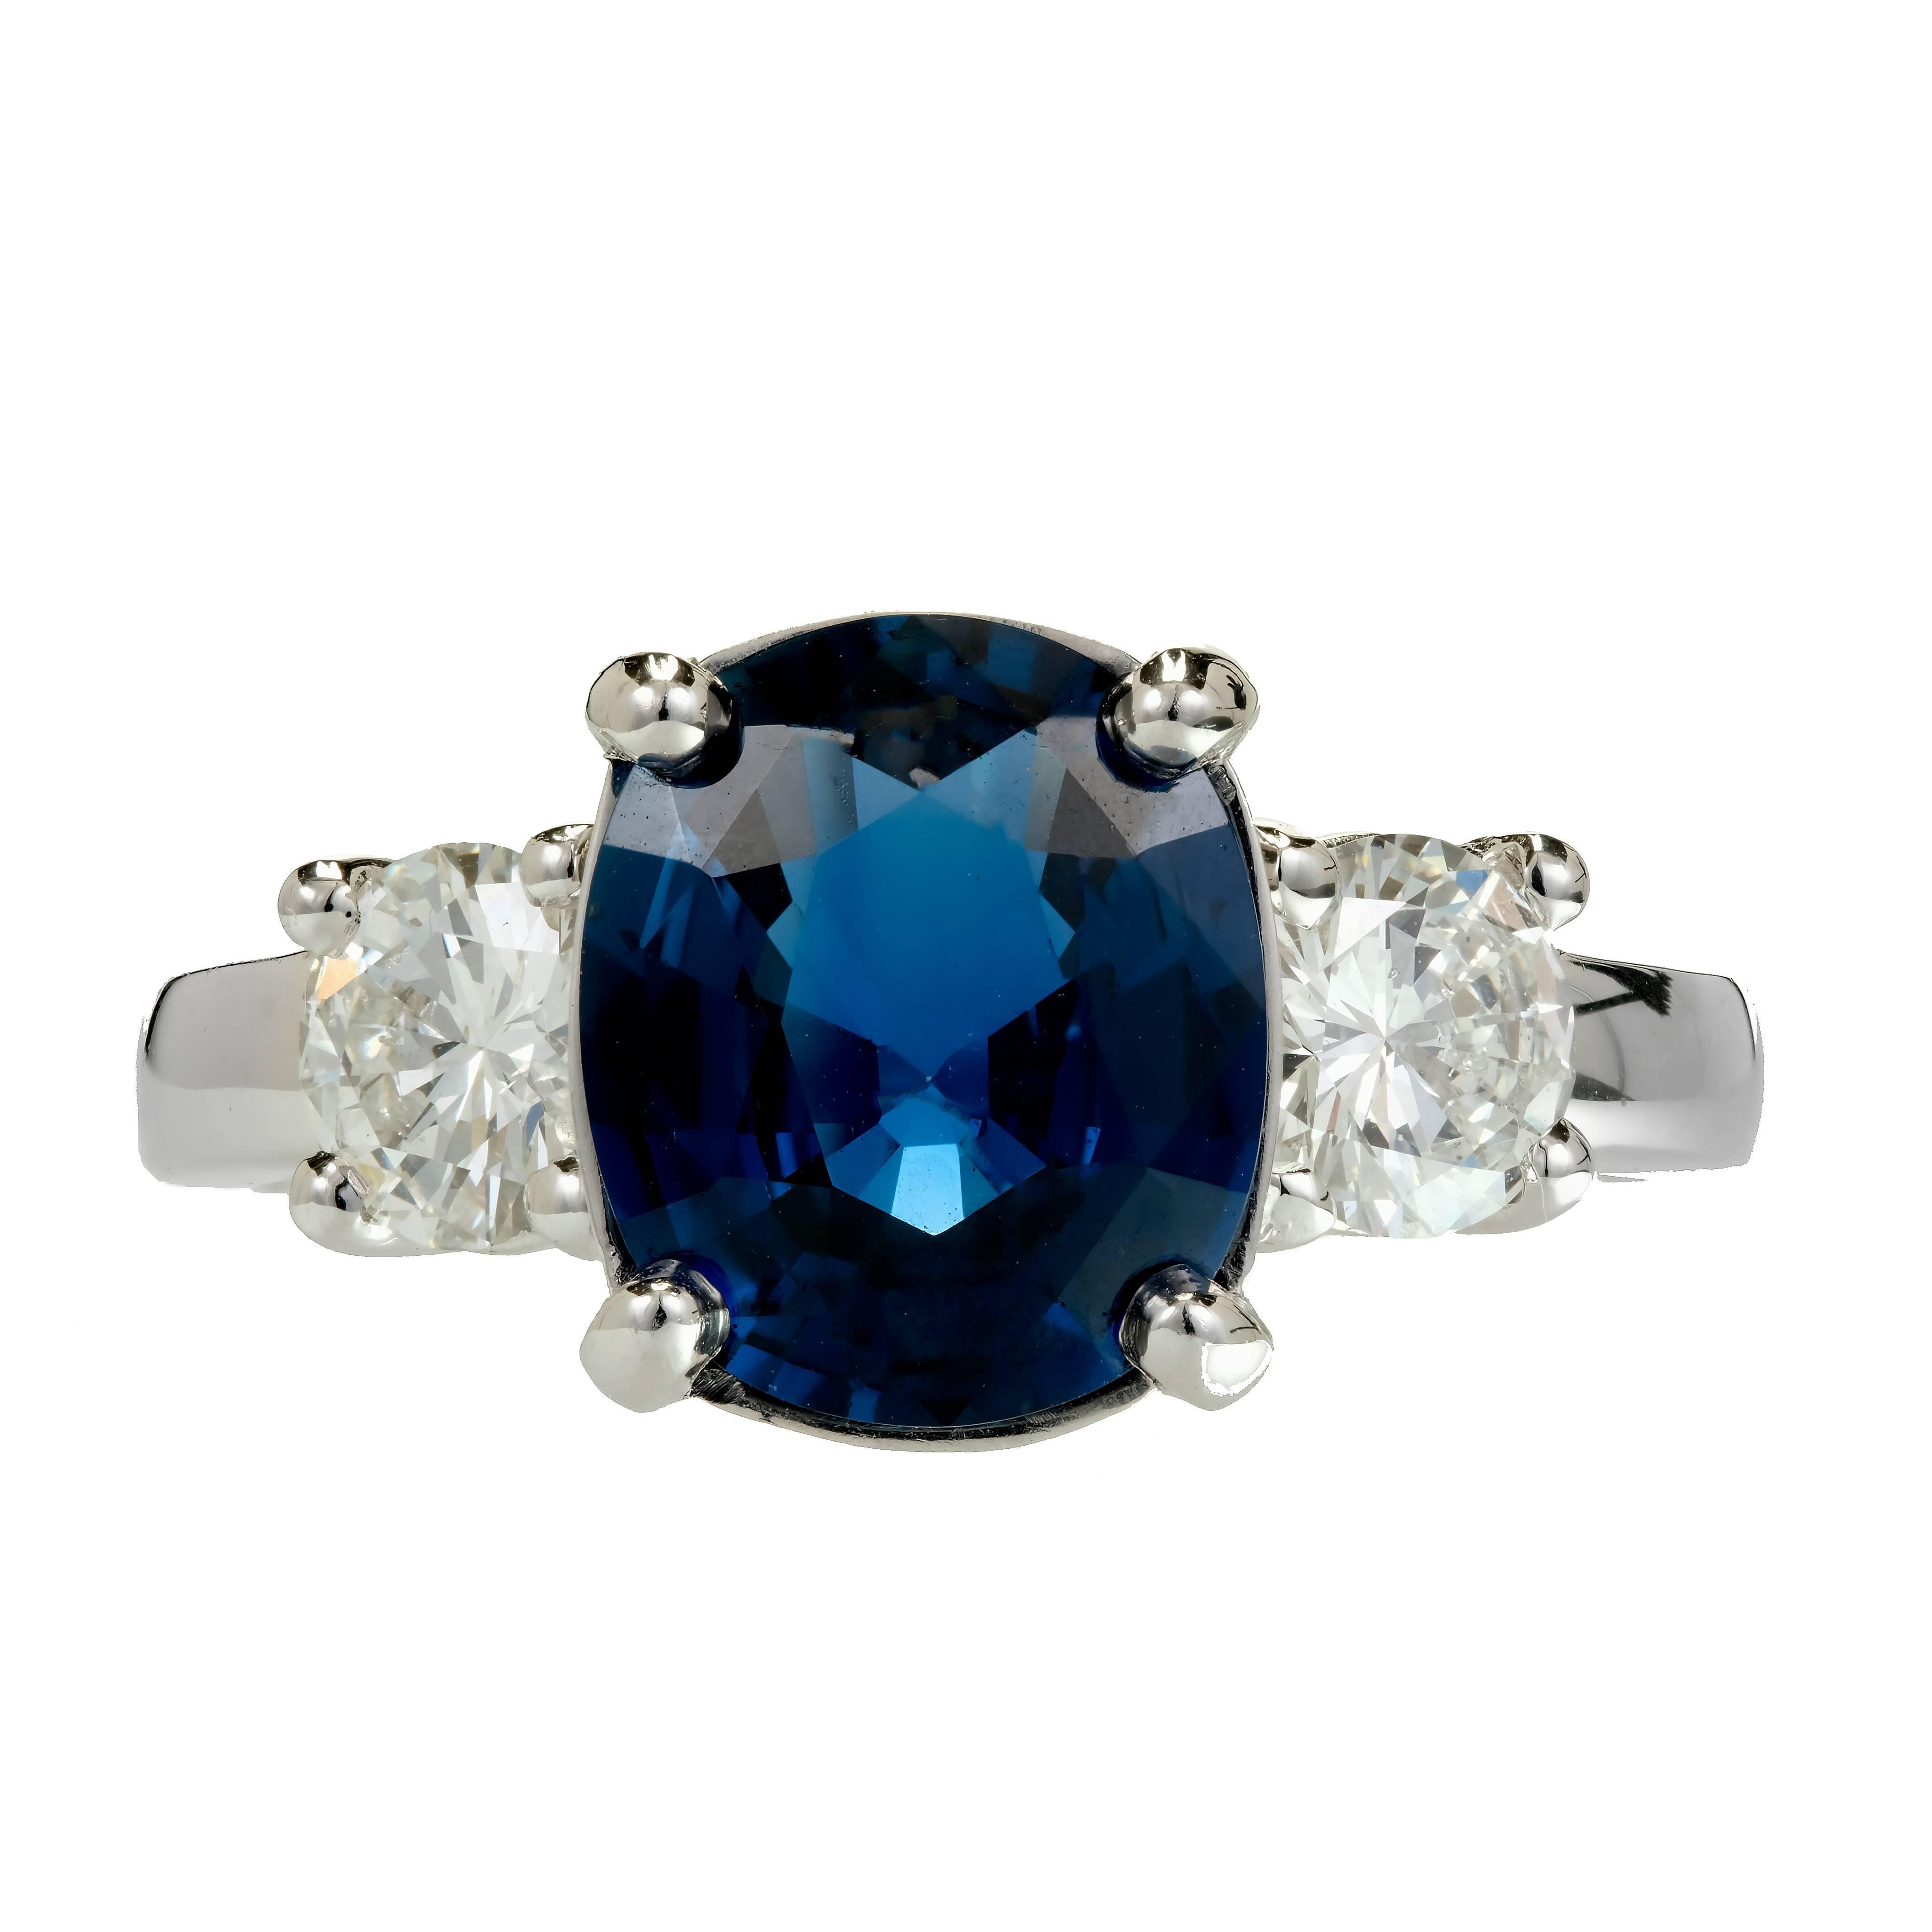 Bague de fiançailles Peter Suchy Platinum Sapphire Diamond. Saphir ovale bleu certifié par le GIA, classé comme Saphir bleu naturel, chaleur simple uniquement, pas d'autres améliorations. La pierre mesure 10,3 x 8,69 x 4,36 mm.  Sertie de deux